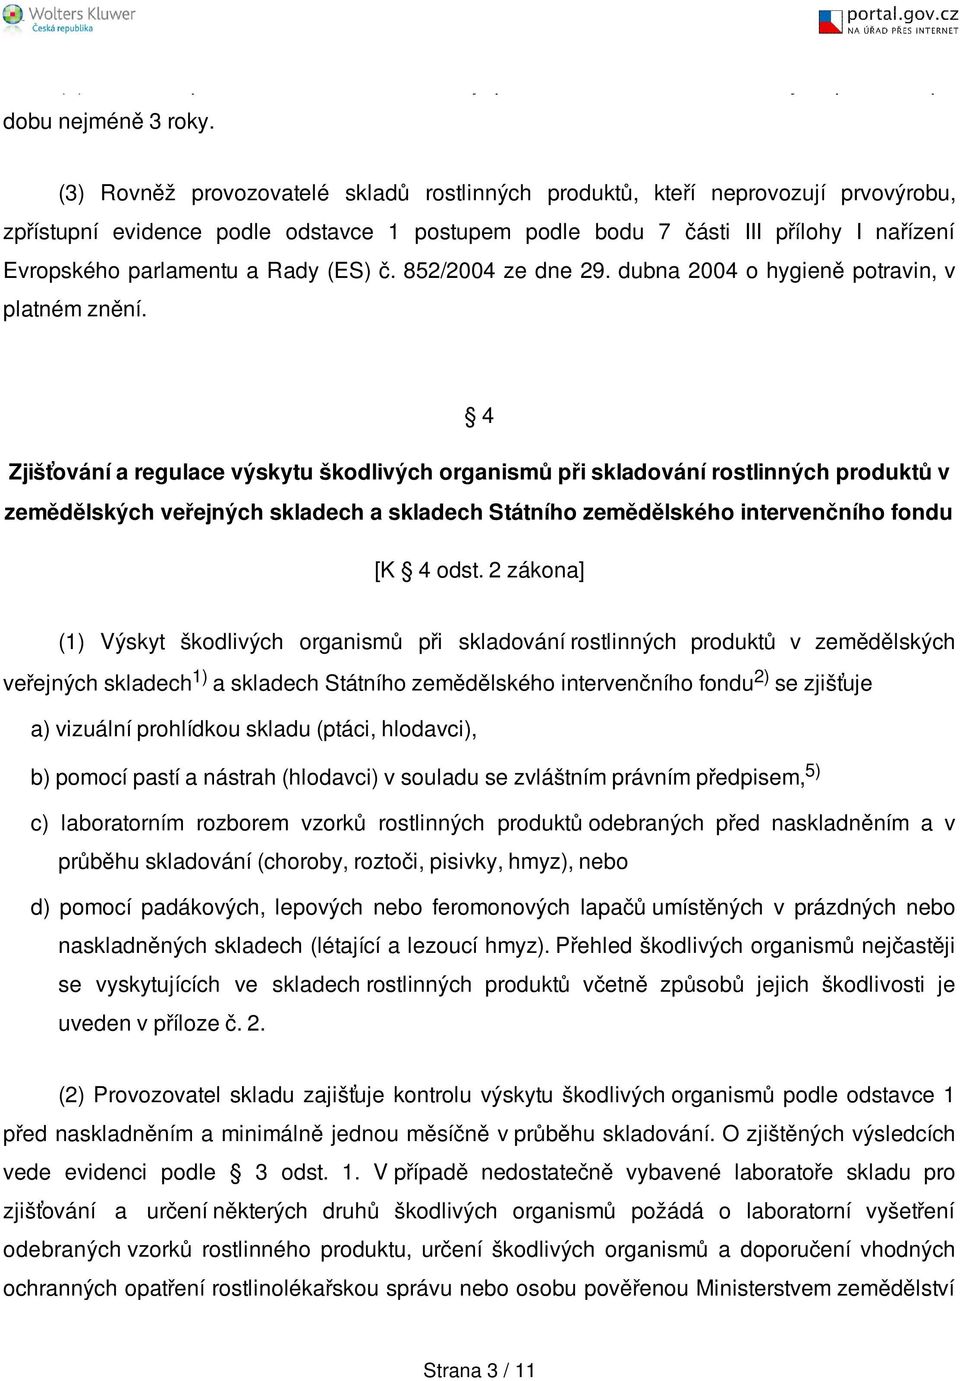 Rady (ES) č. 852/2004 ze dne 29. dubna 2004 o hygieně potravin, v platném znění.